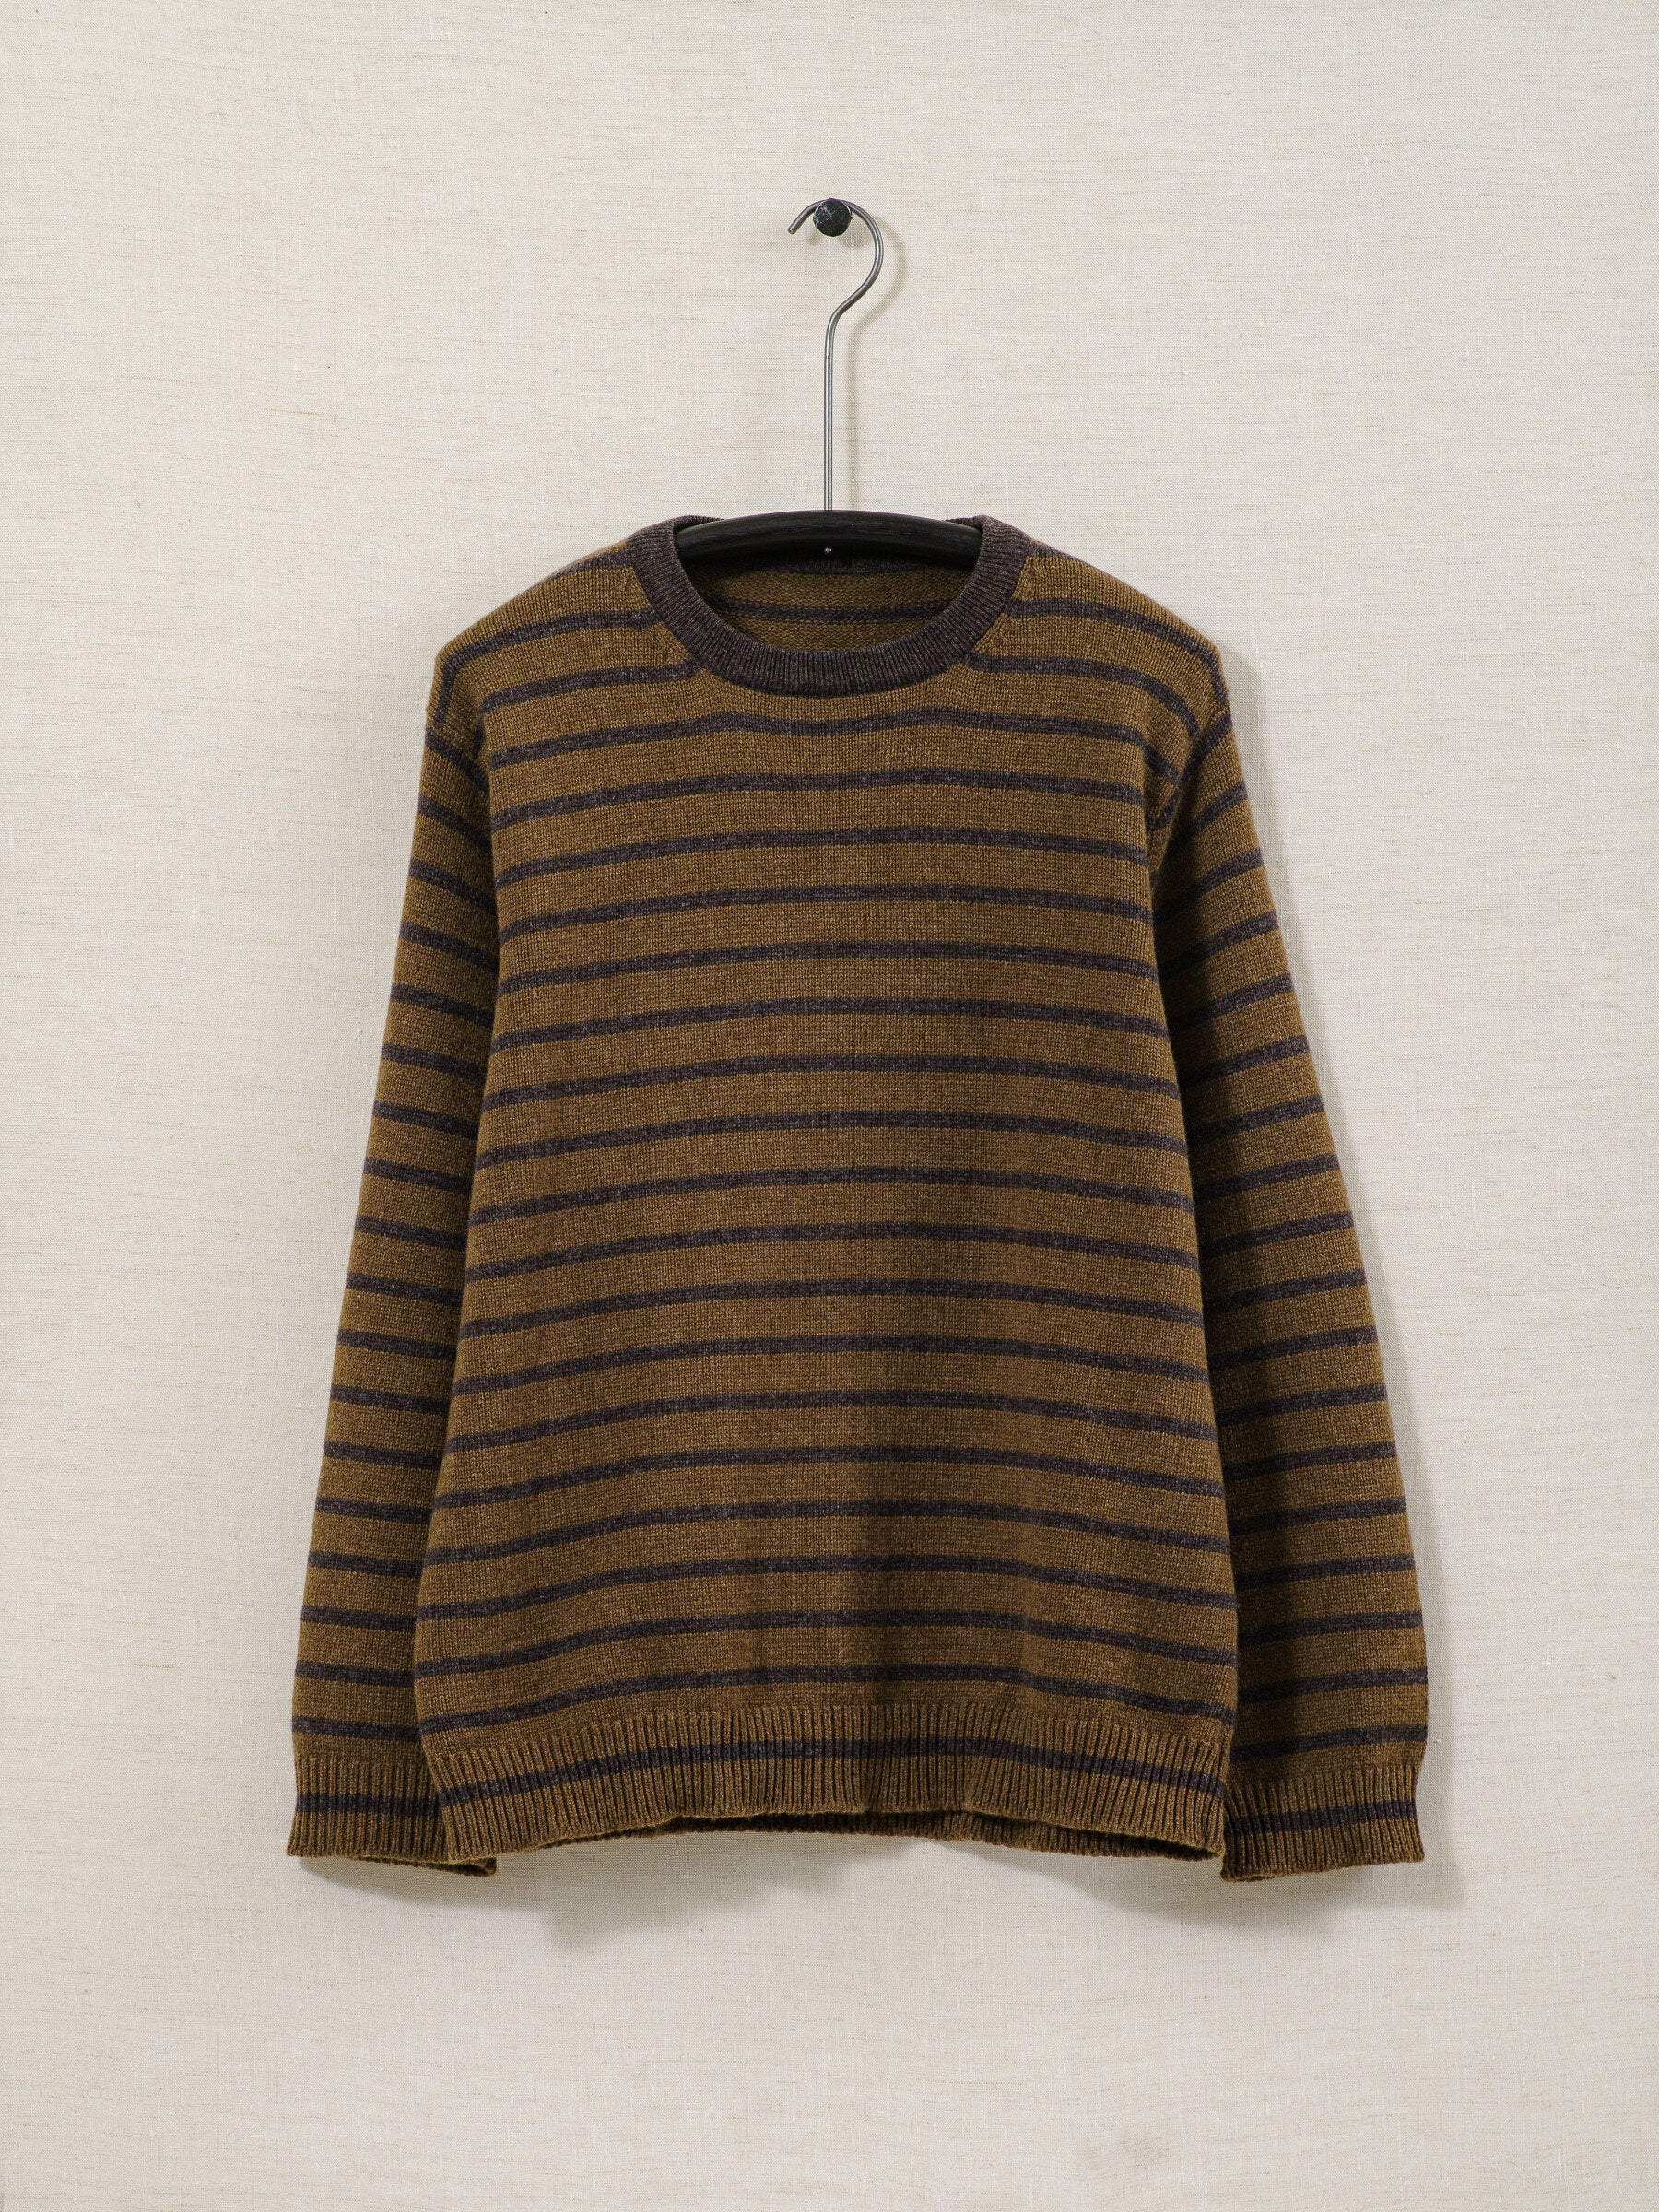 Stripe Collar Sweater - Lambswool/Cashmere – evan kinori